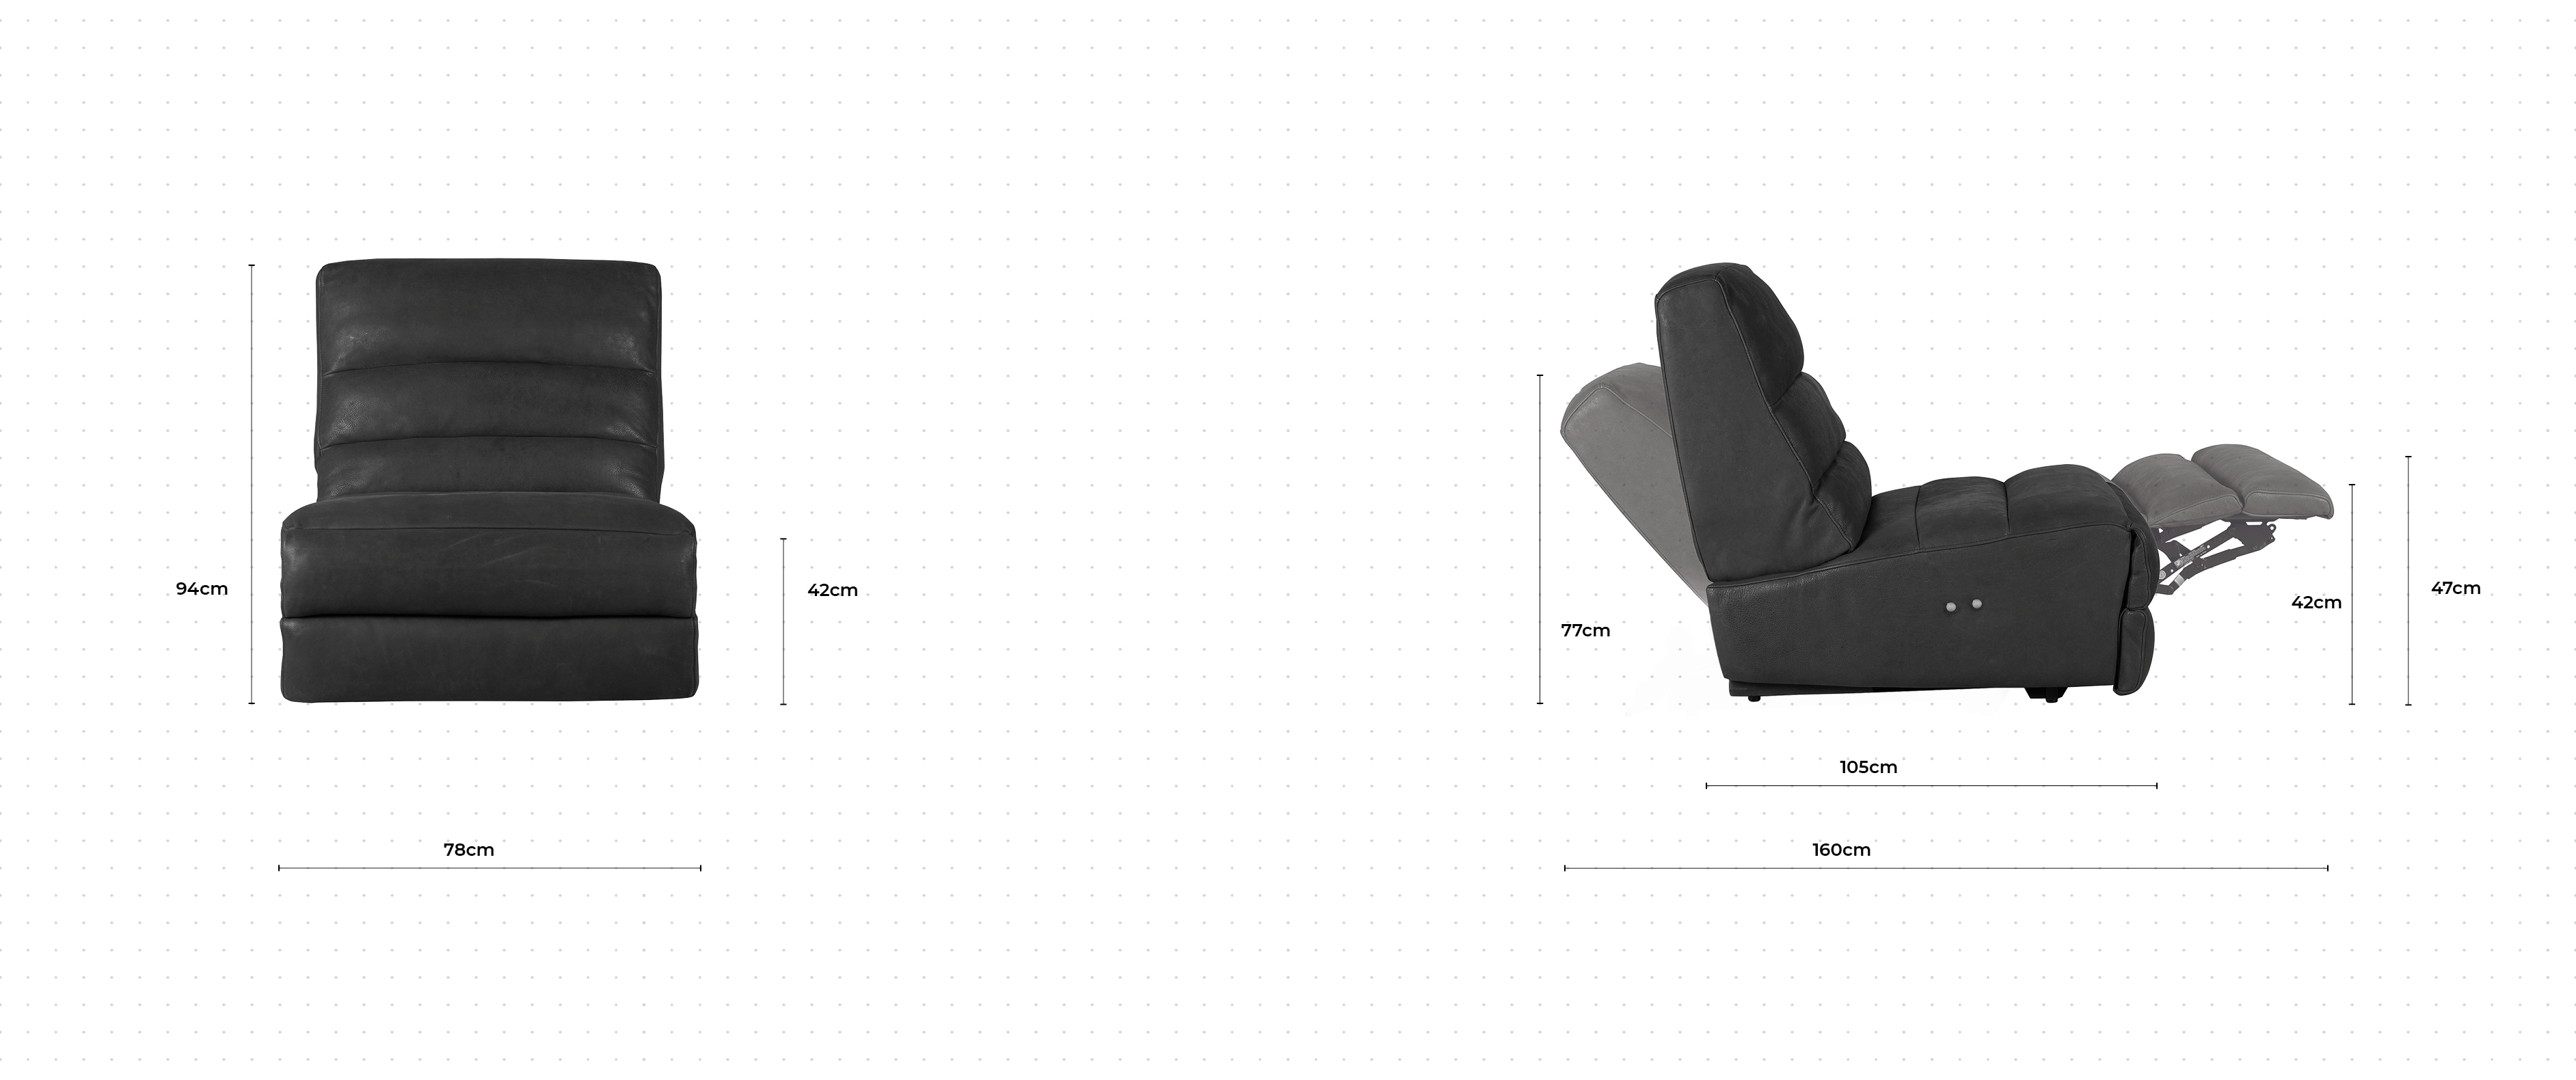 Lucas Chair dimensions